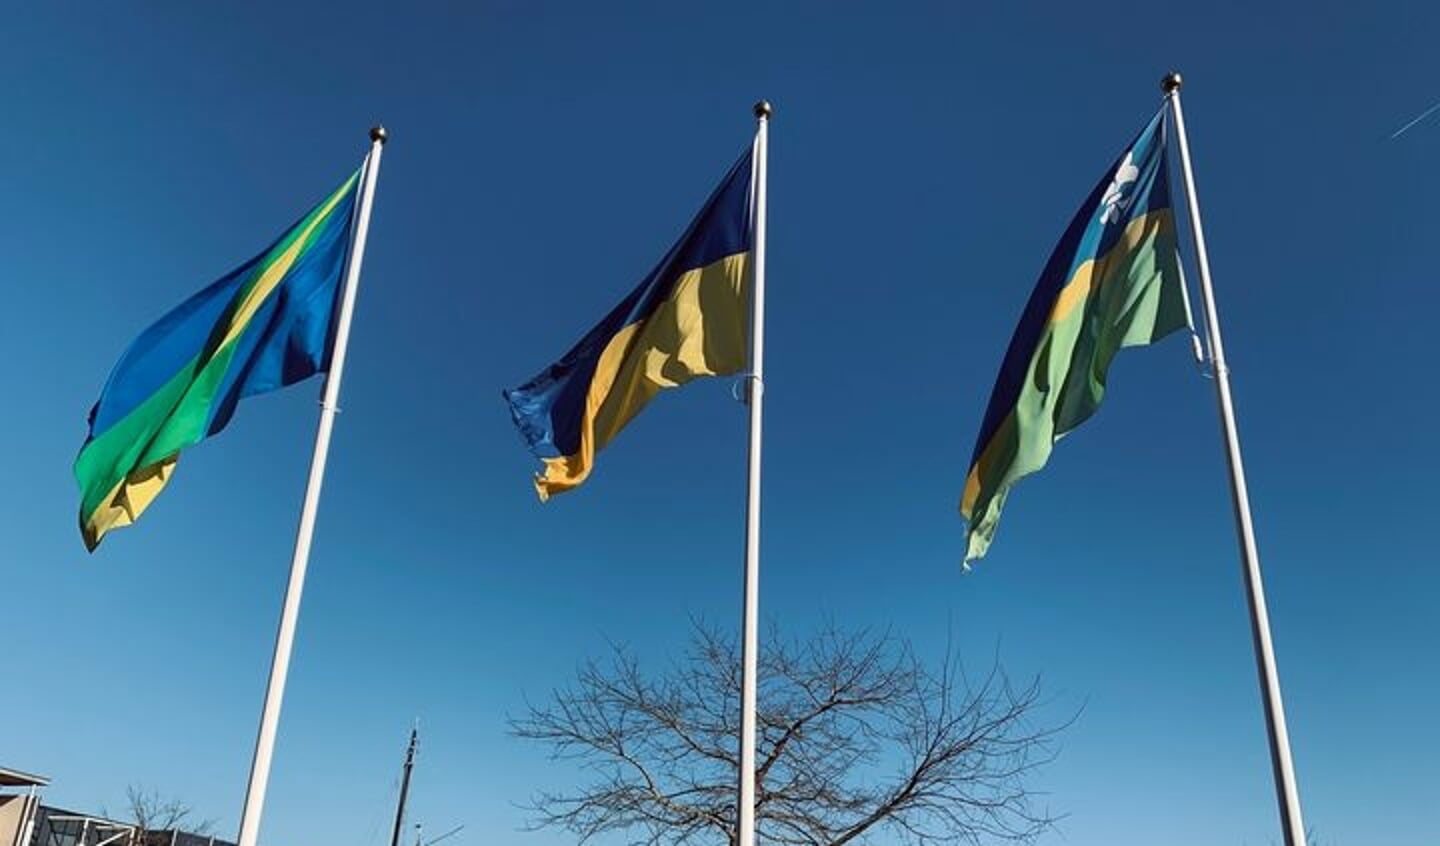 Oekraïense vlag gehesen bij gemeentehuis als symbolische actie als steunbetuiging